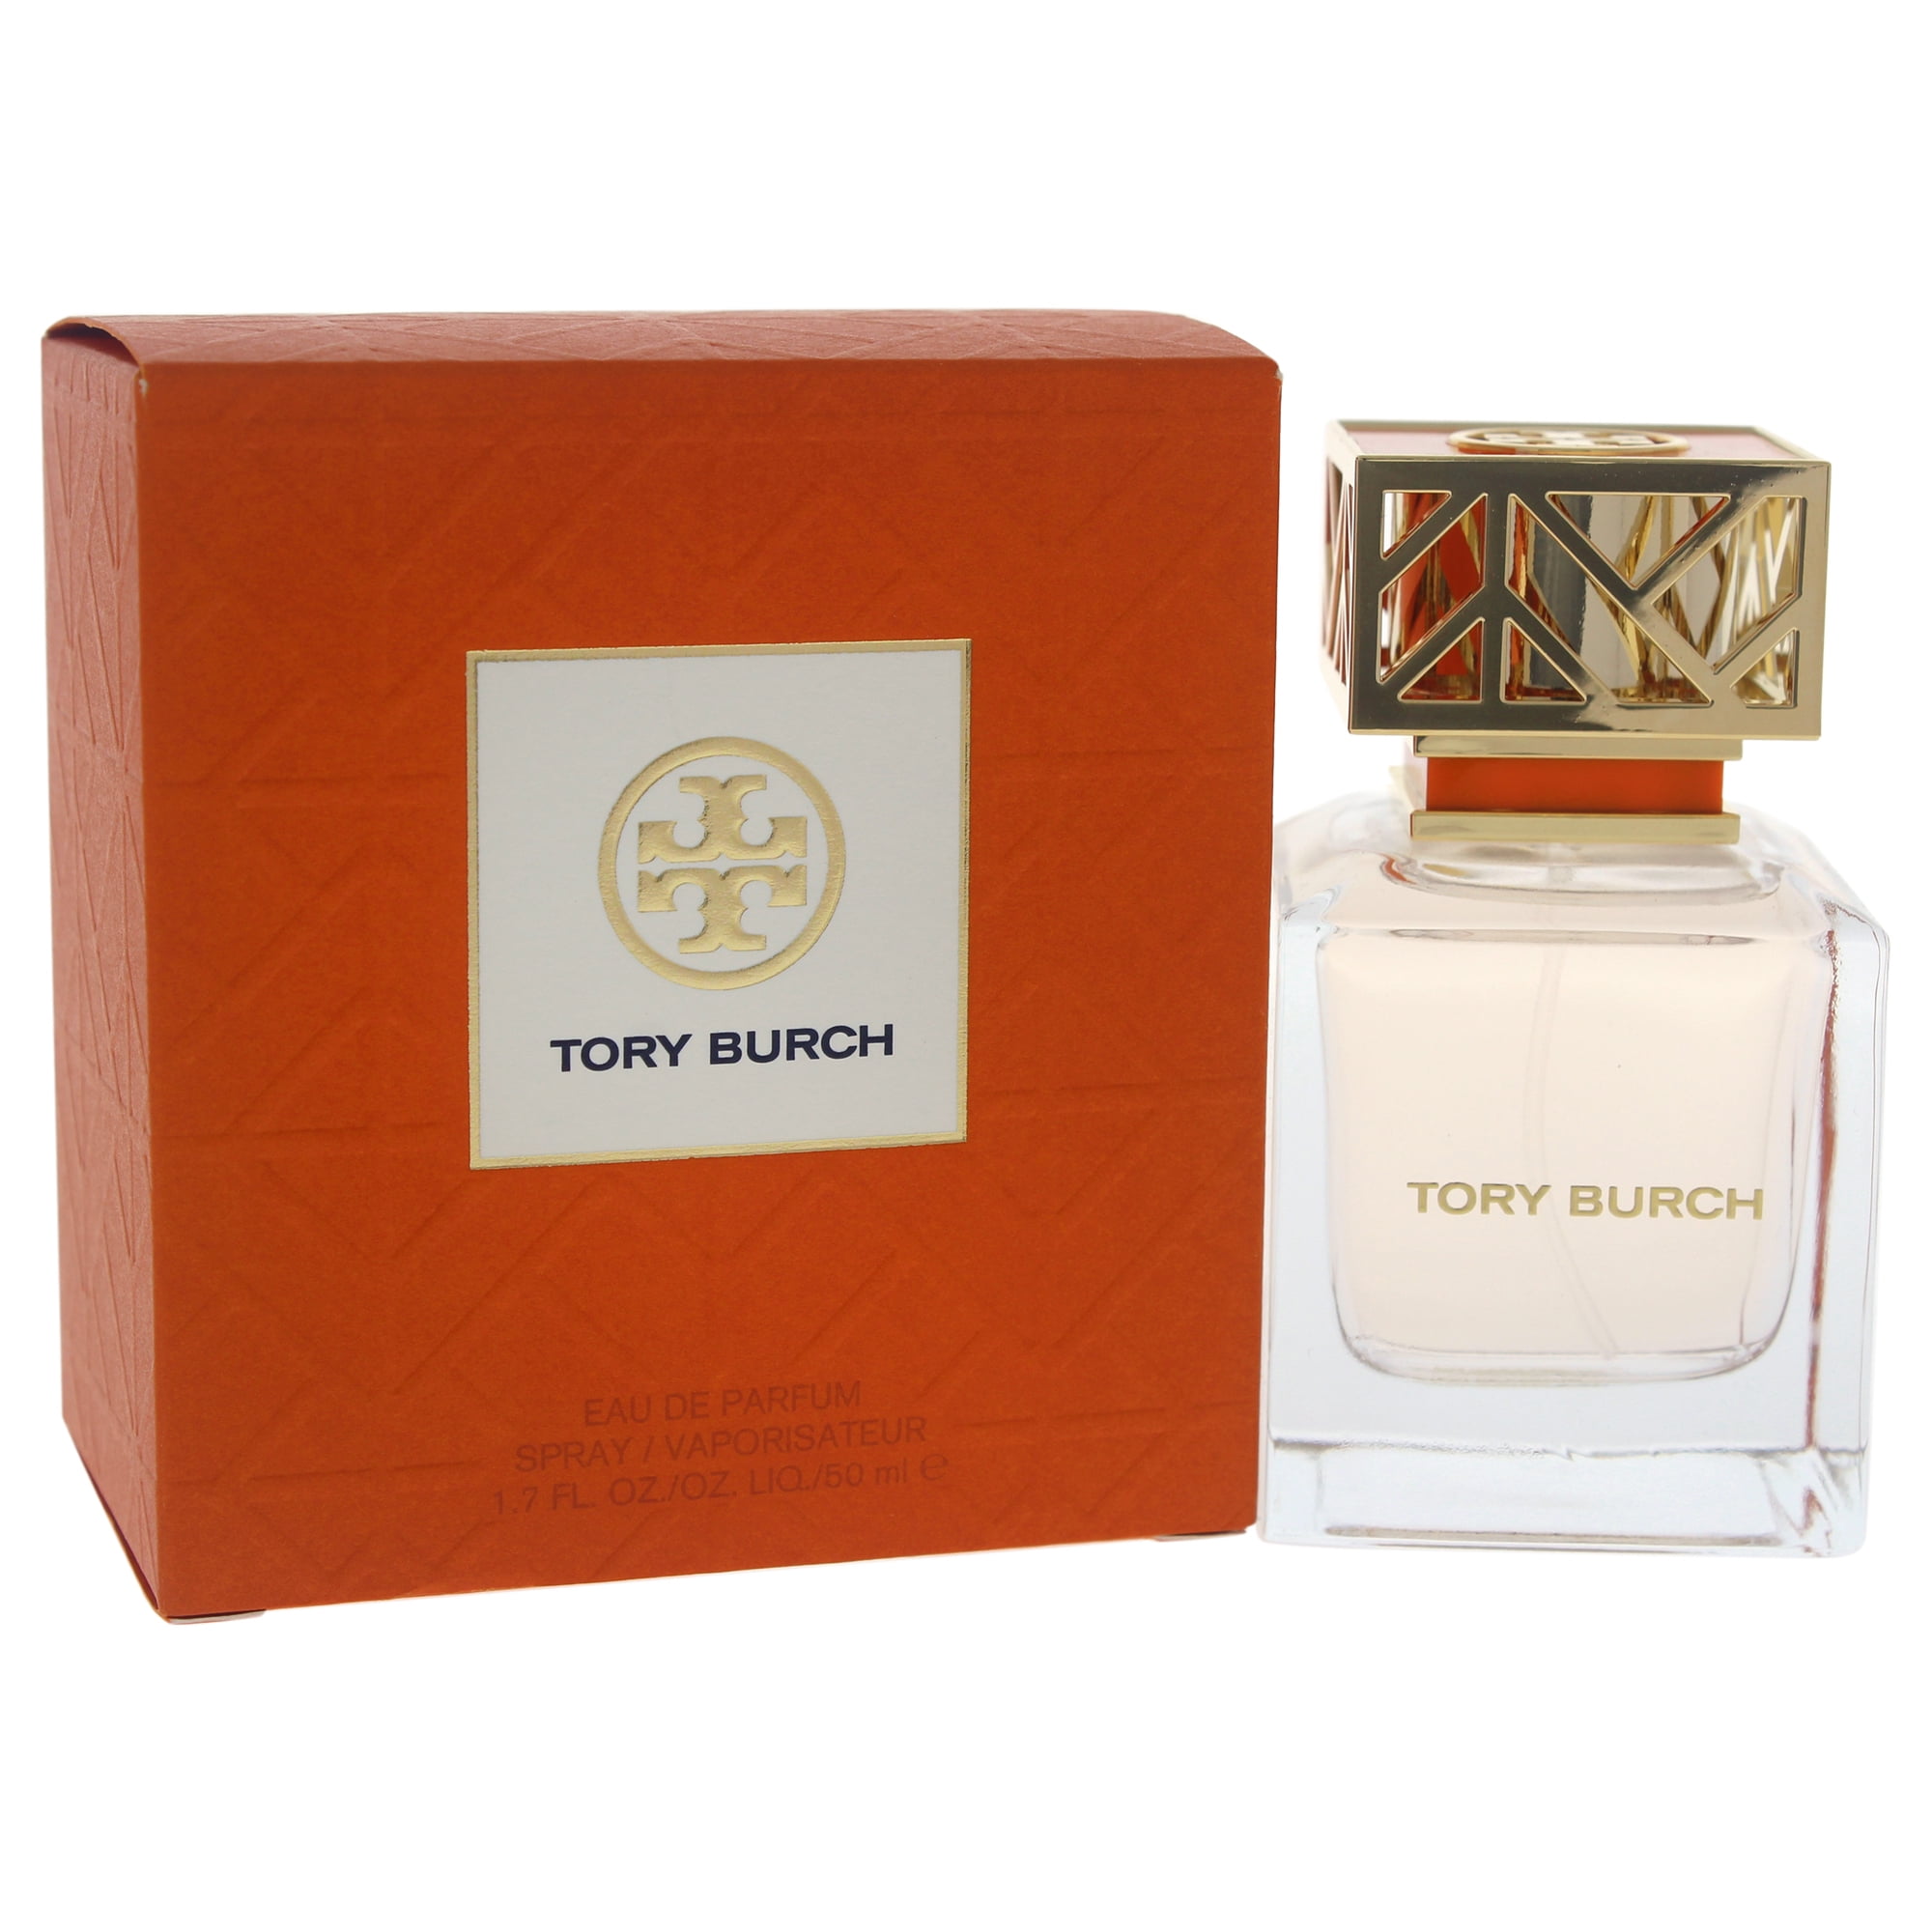 Tory Burch Eau de Parfum, Perfume for Women,  Oz 